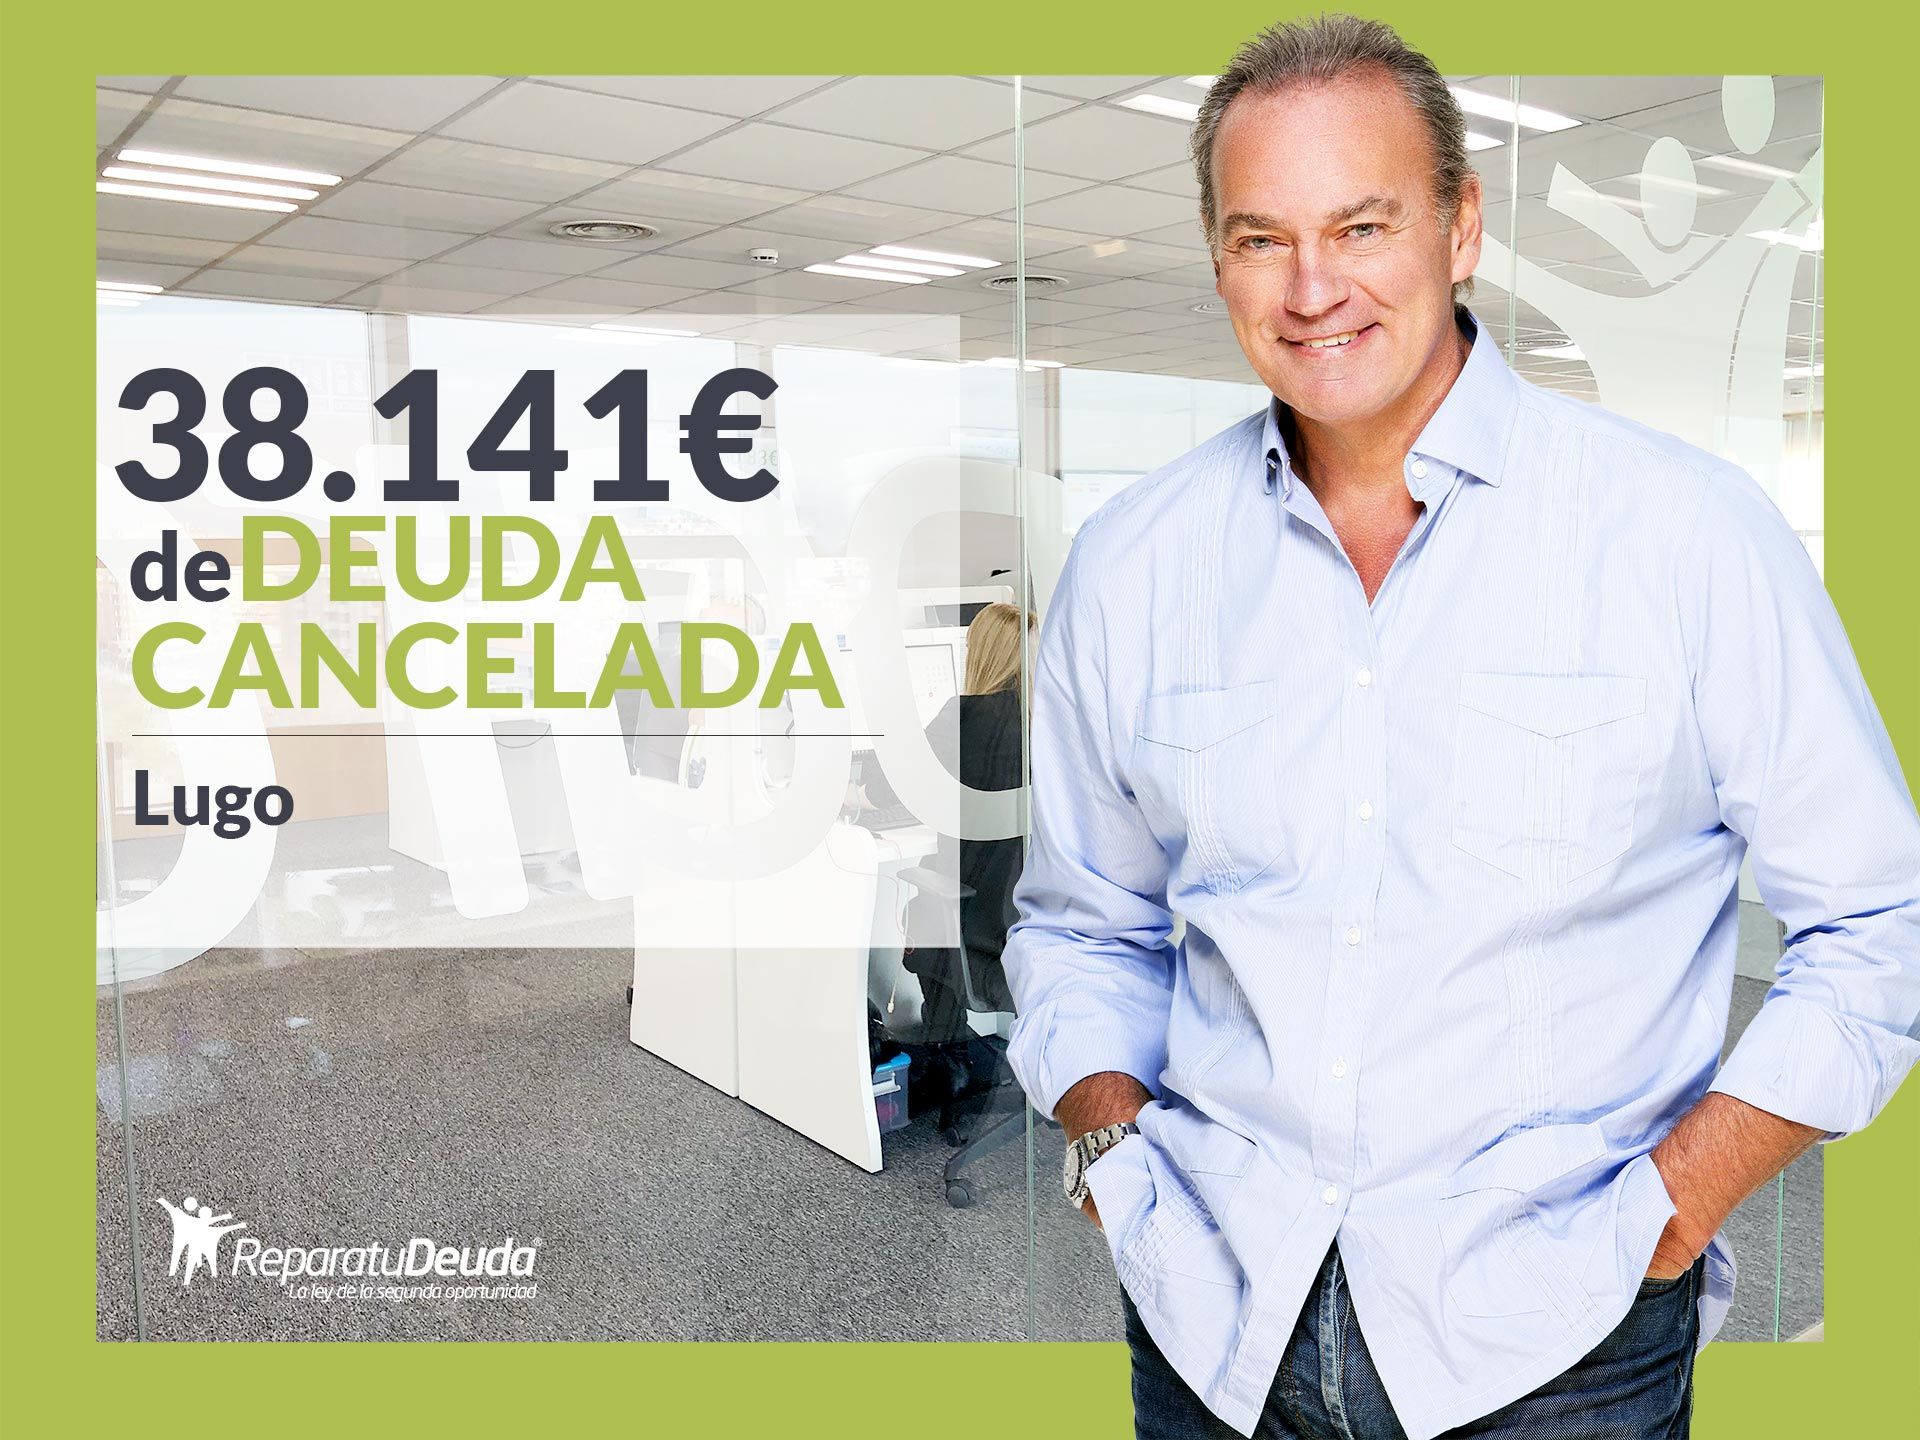 Repara tu Deuda Abogados cancela 38.141? en Lugo (Galicia) con la Ley de la Segunda Oportunidad